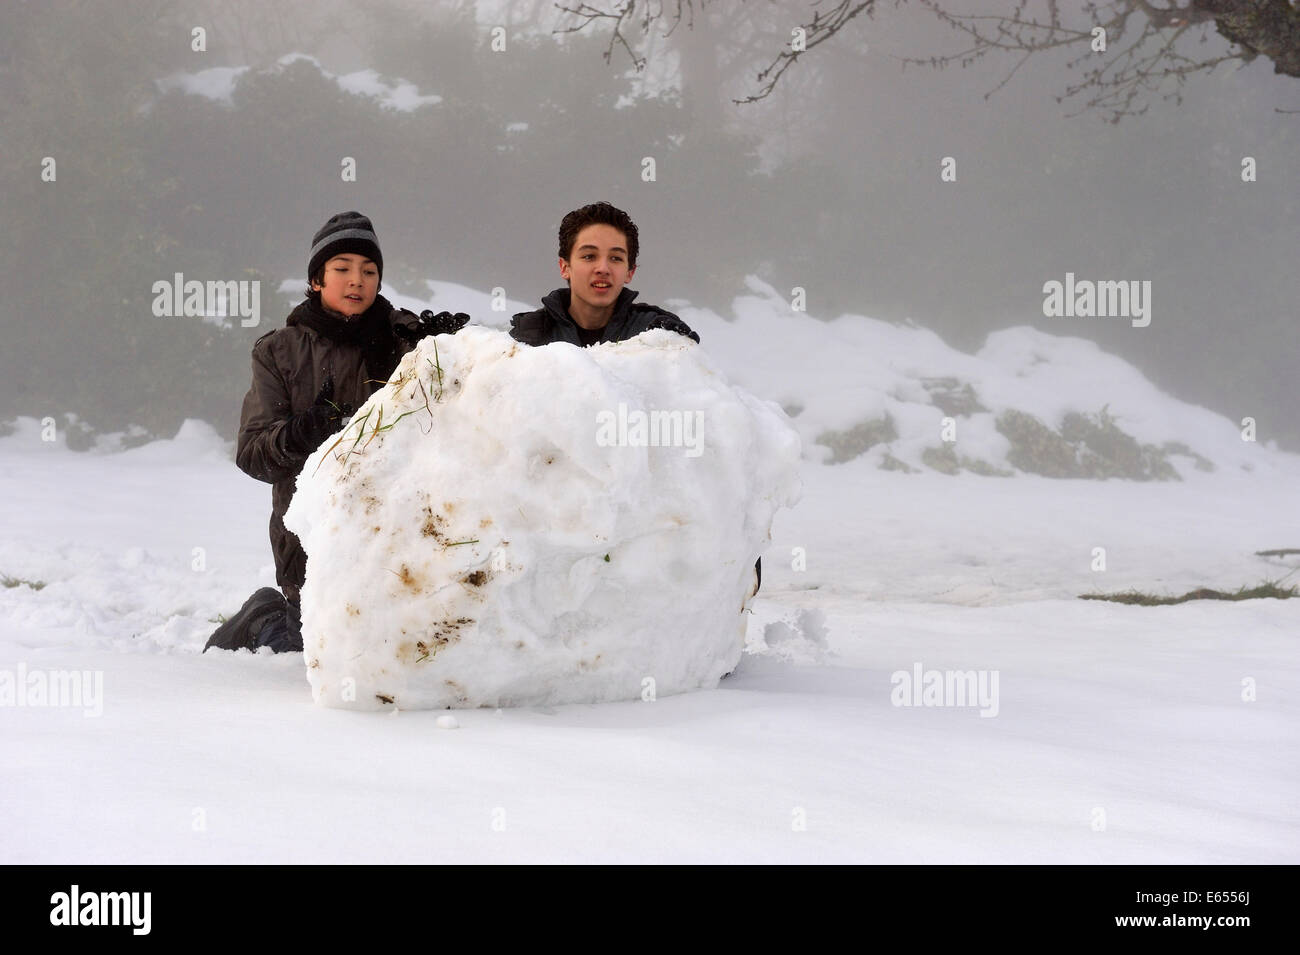 Kinder spielen - jungen im Teenageralter Rollen einen riesigen Schneeball bergab im Schnee im Winter Stockfoto